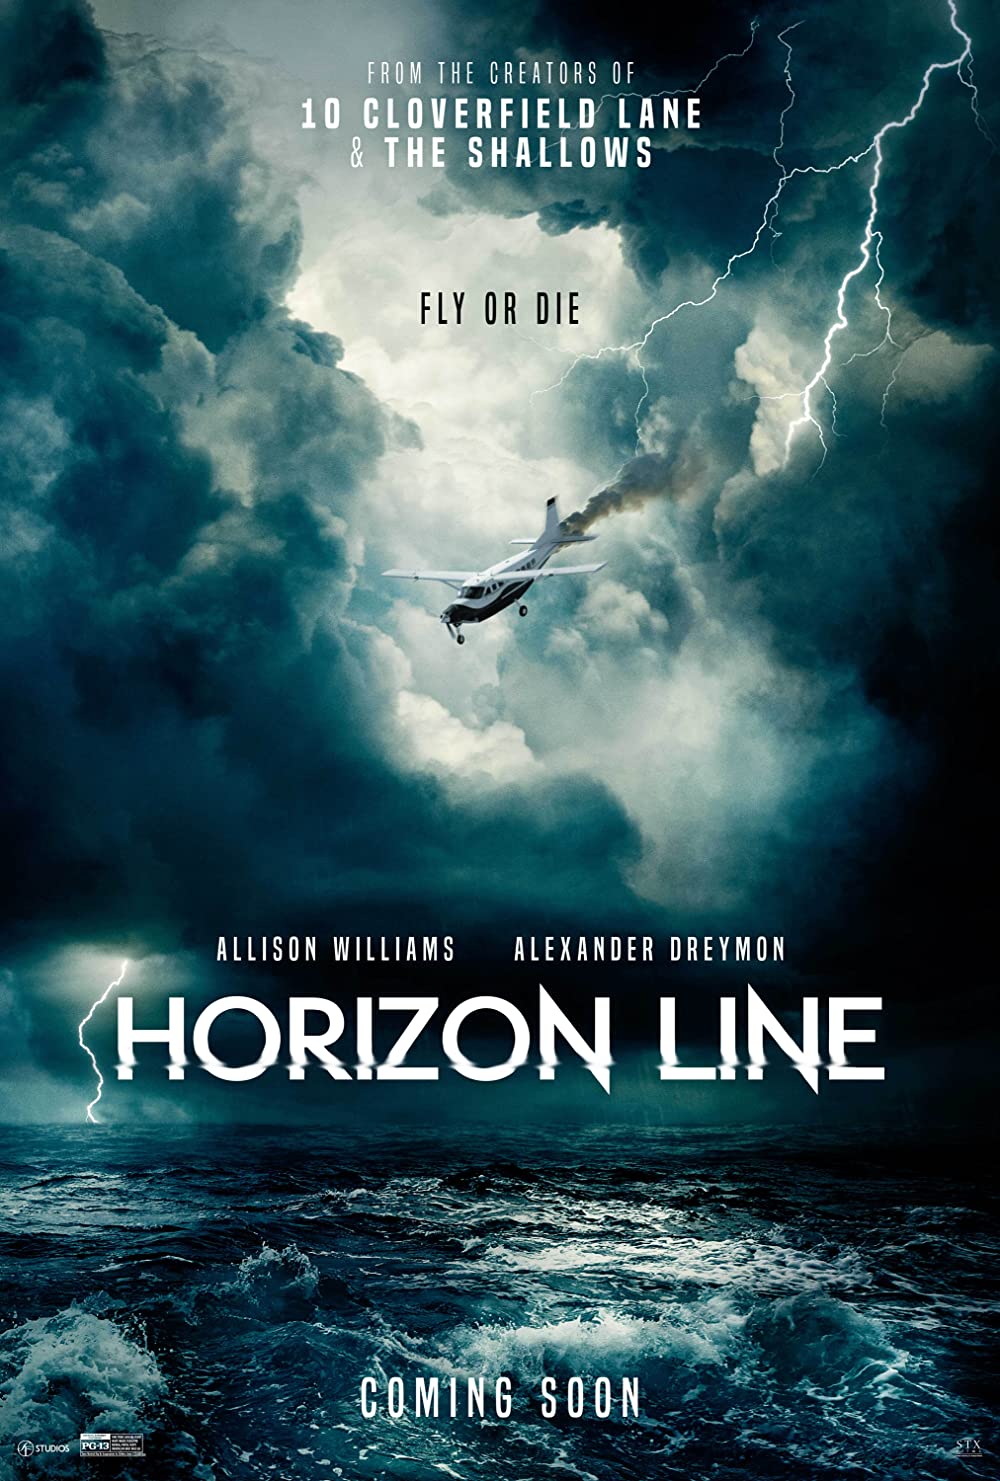 Filmbeschreibung zu Horizon Line